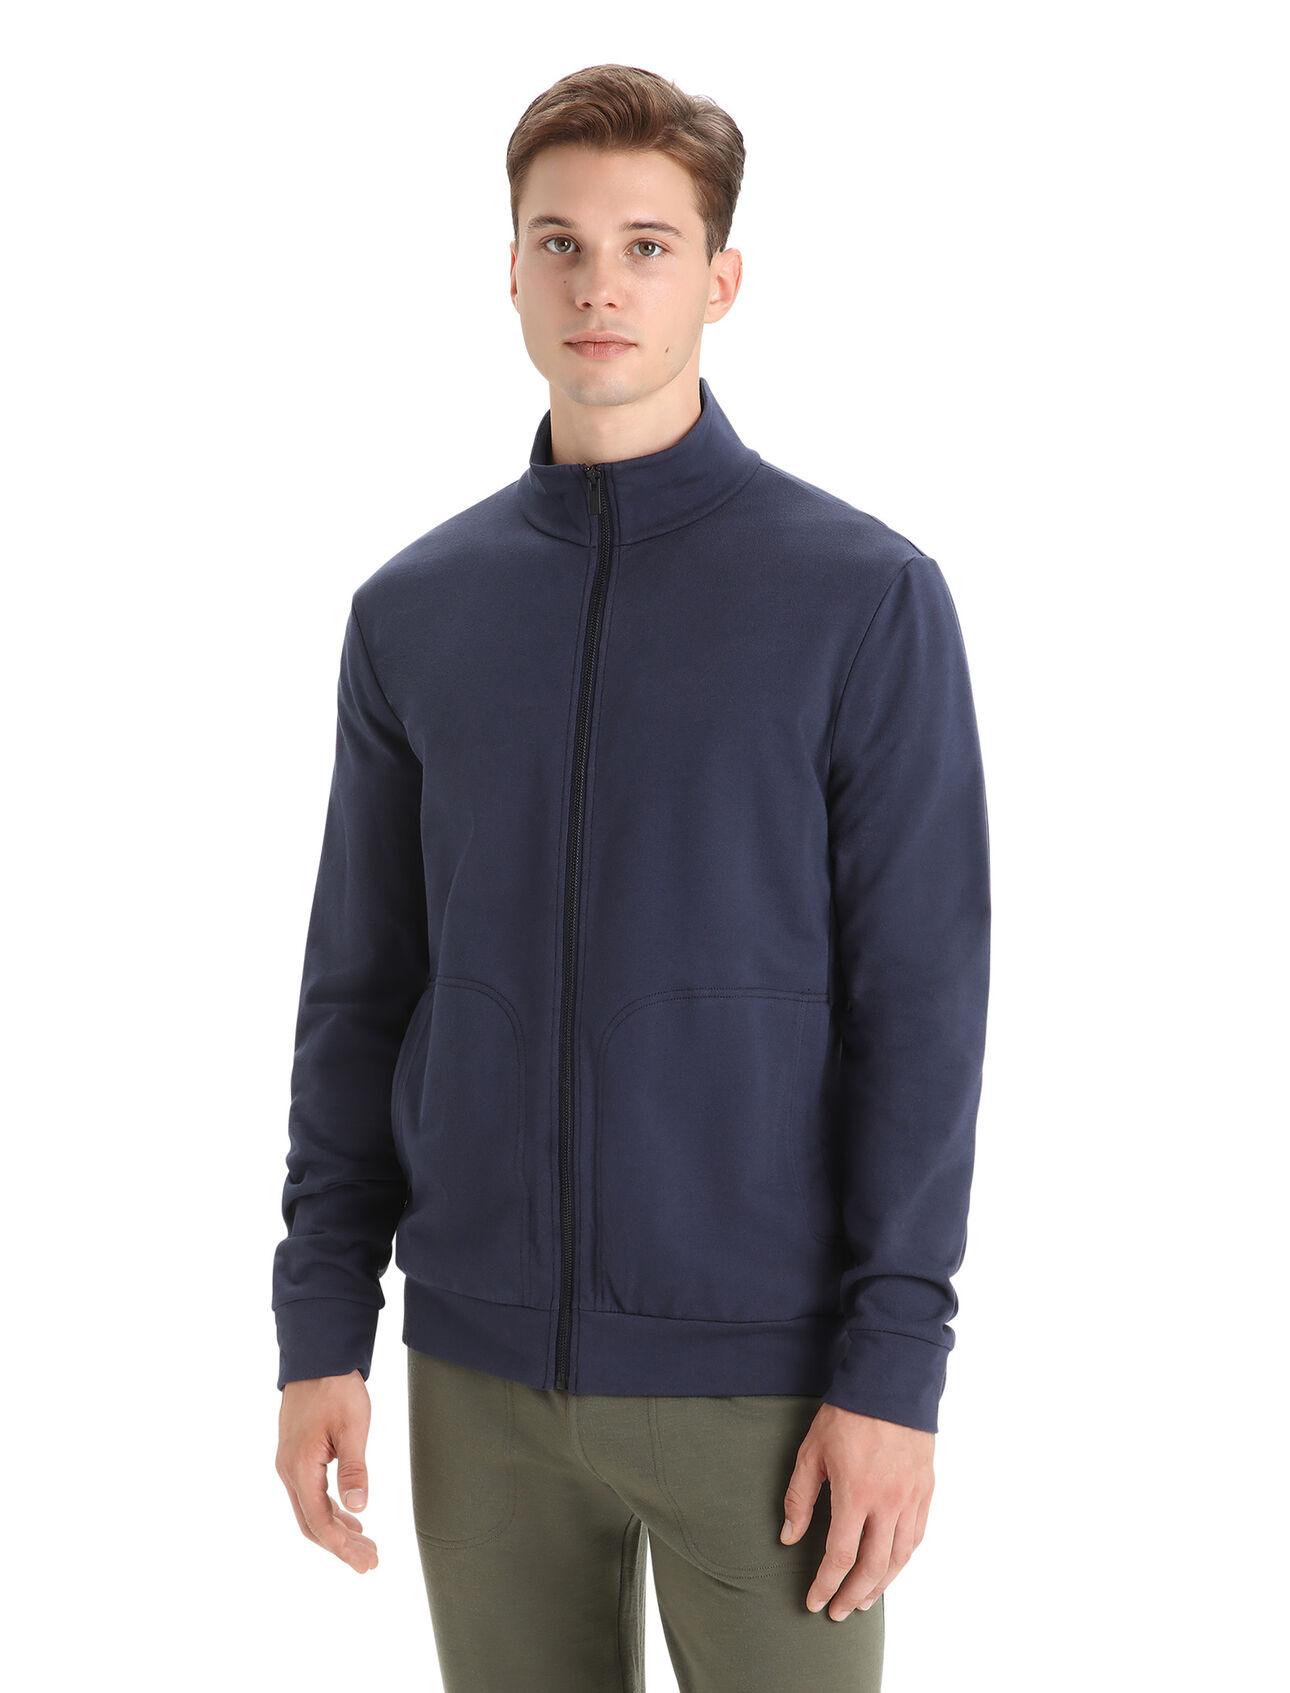 Men's Merino Blend Central Long Sleeve Zip Sweatshirt